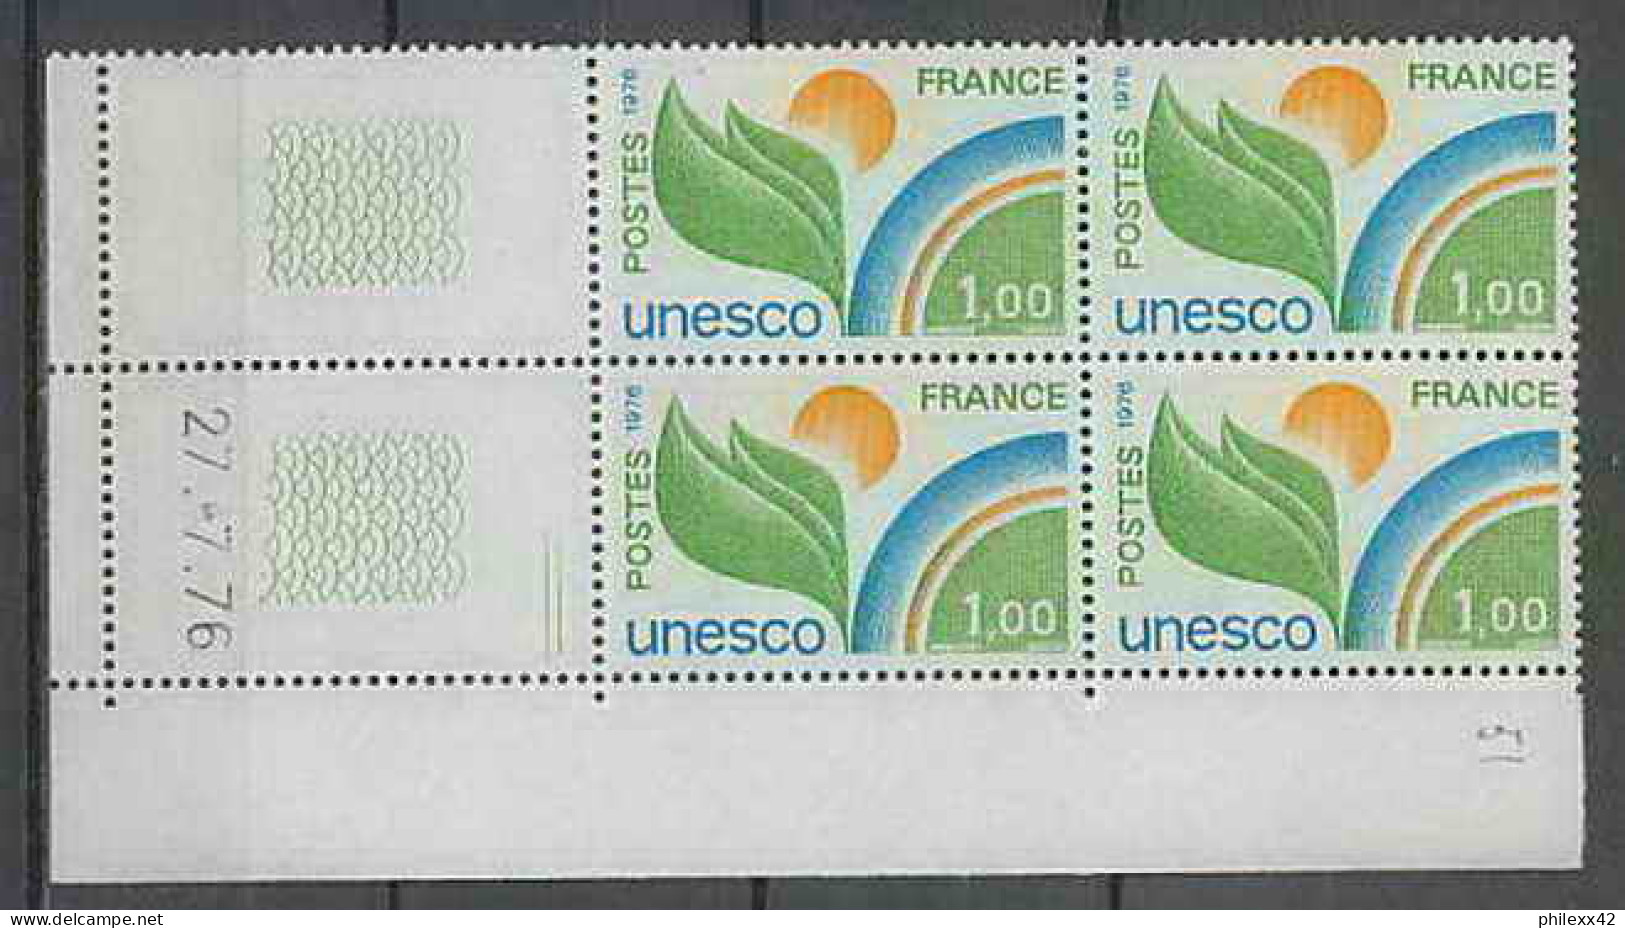 1308 - France - Coin Daté TB Neuf ** Service Unesco N°51 Date 27/7/1976 2 Traits  - Servizio